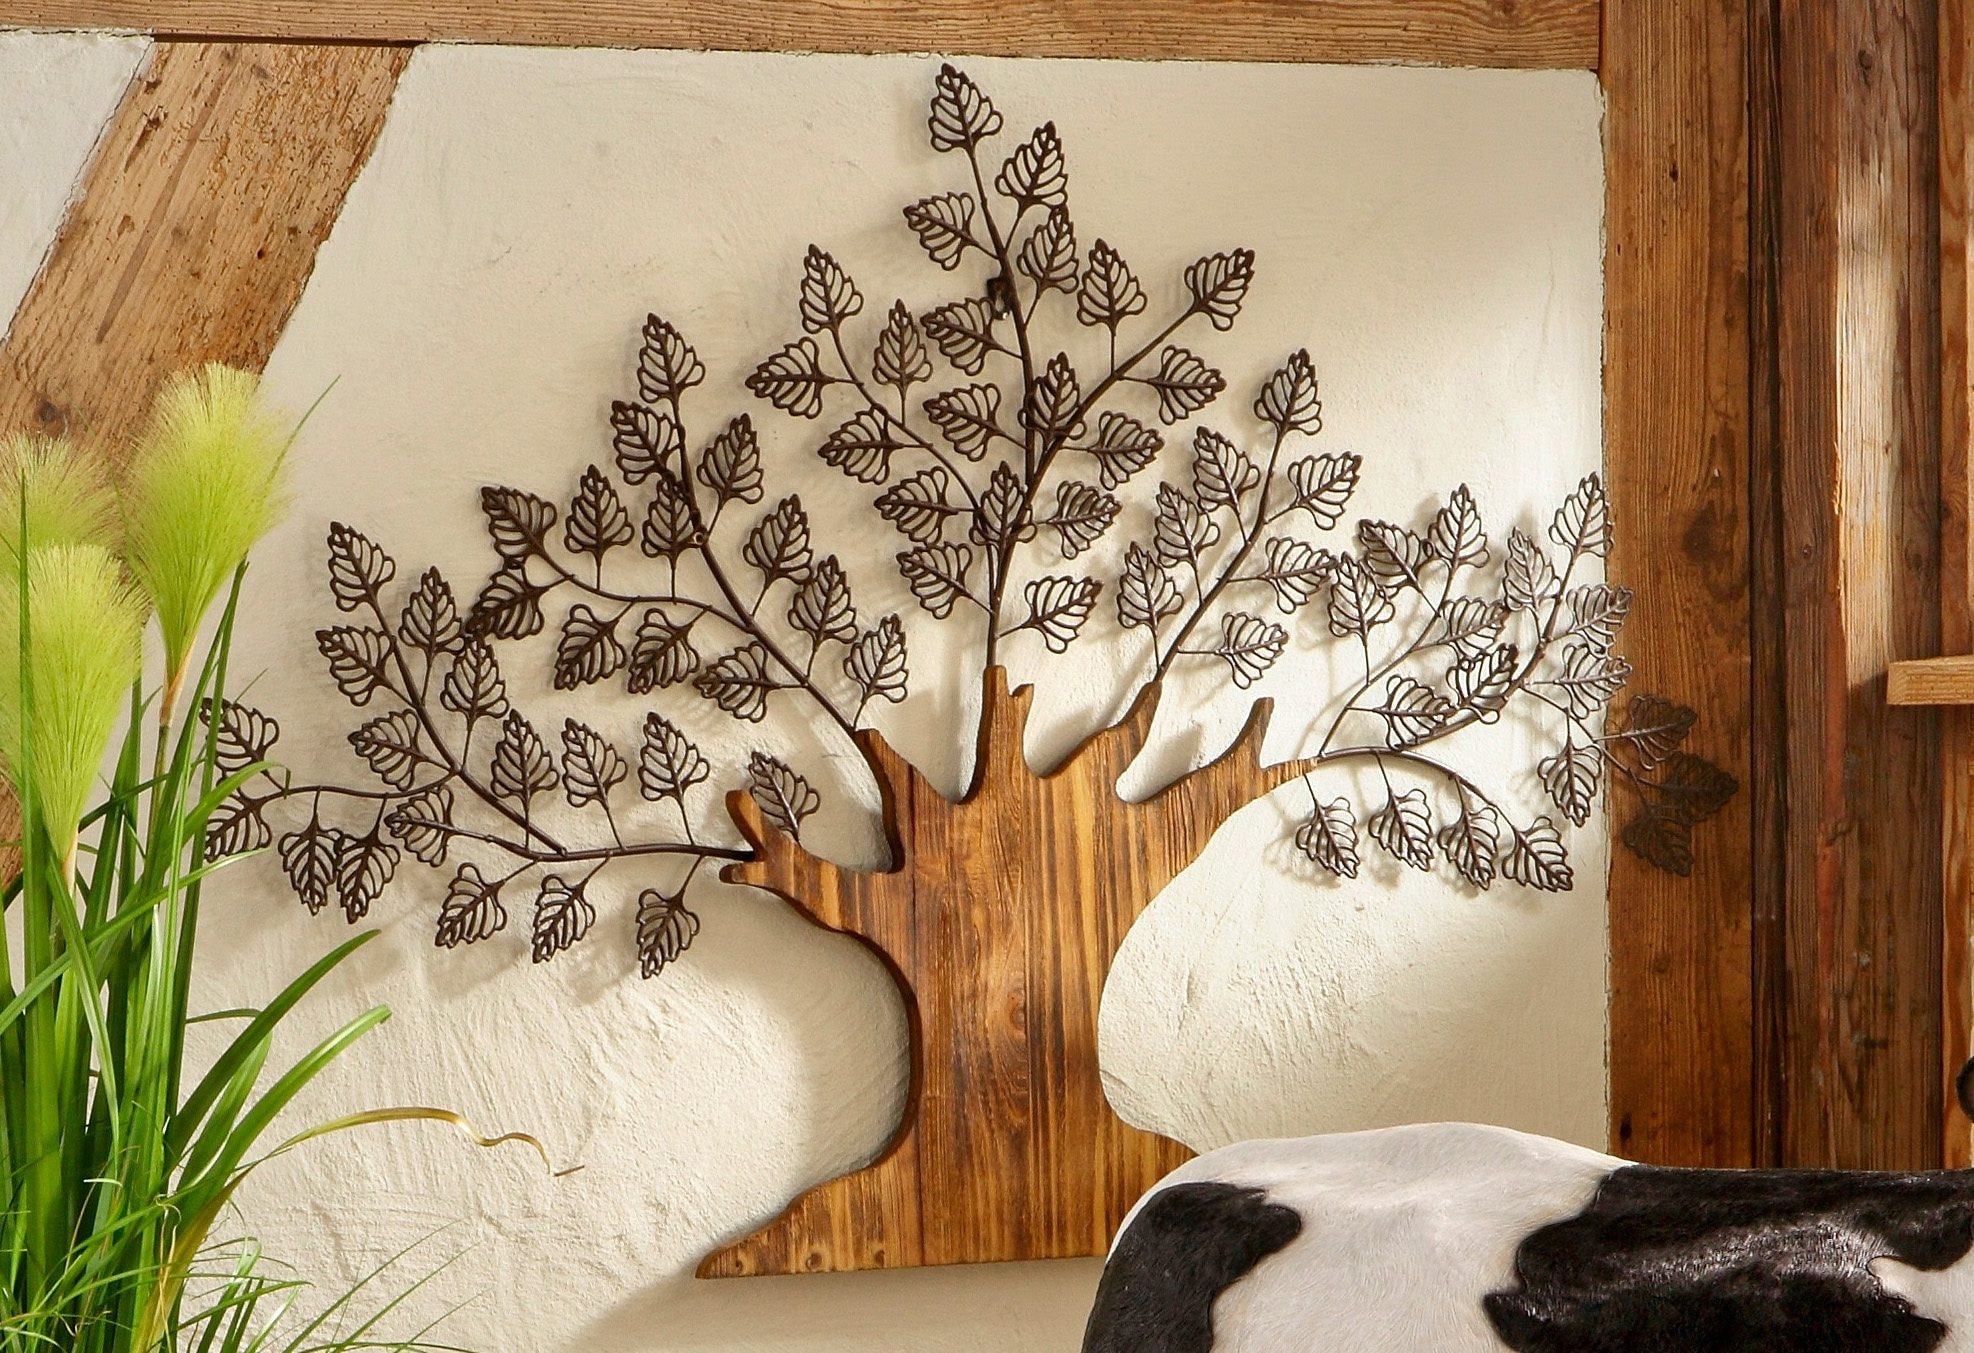 HOFMANN LIVING AND MORE Wanddekoobjekt »Baum«, Materialmix aus Metall und Holz